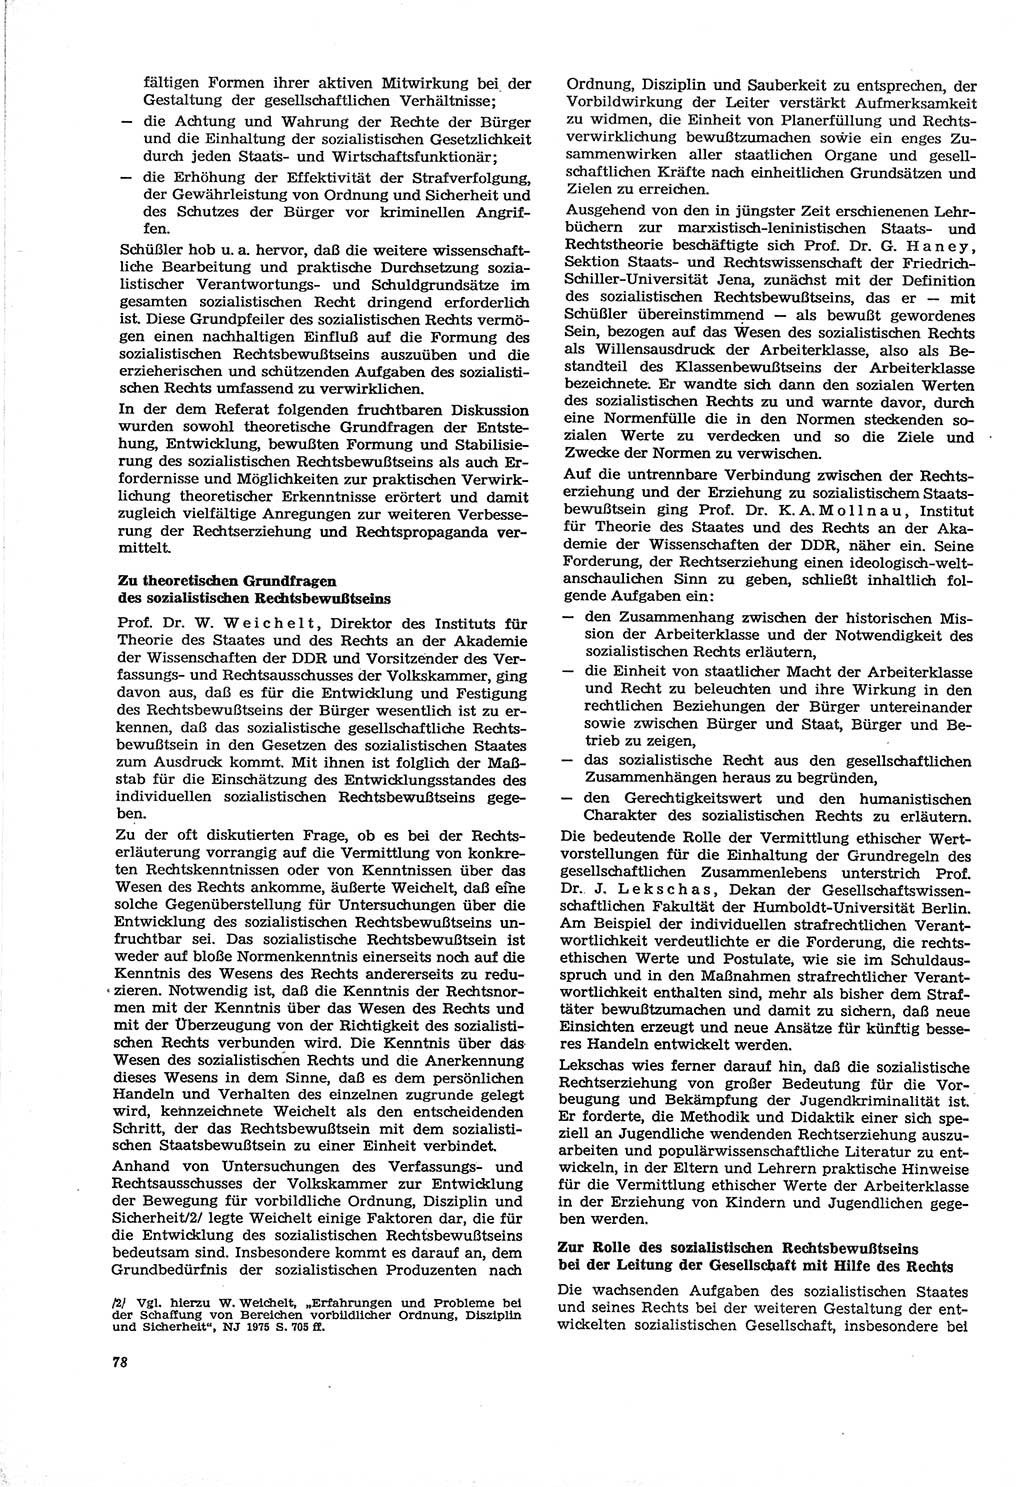 Neue Justiz (NJ), Zeitschrift für Recht und Rechtswissenschaft [Deutsche Demokratische Republik (DDR)], 30. Jahrgang 1976, Seite 78 (NJ DDR 1976, S. 78)